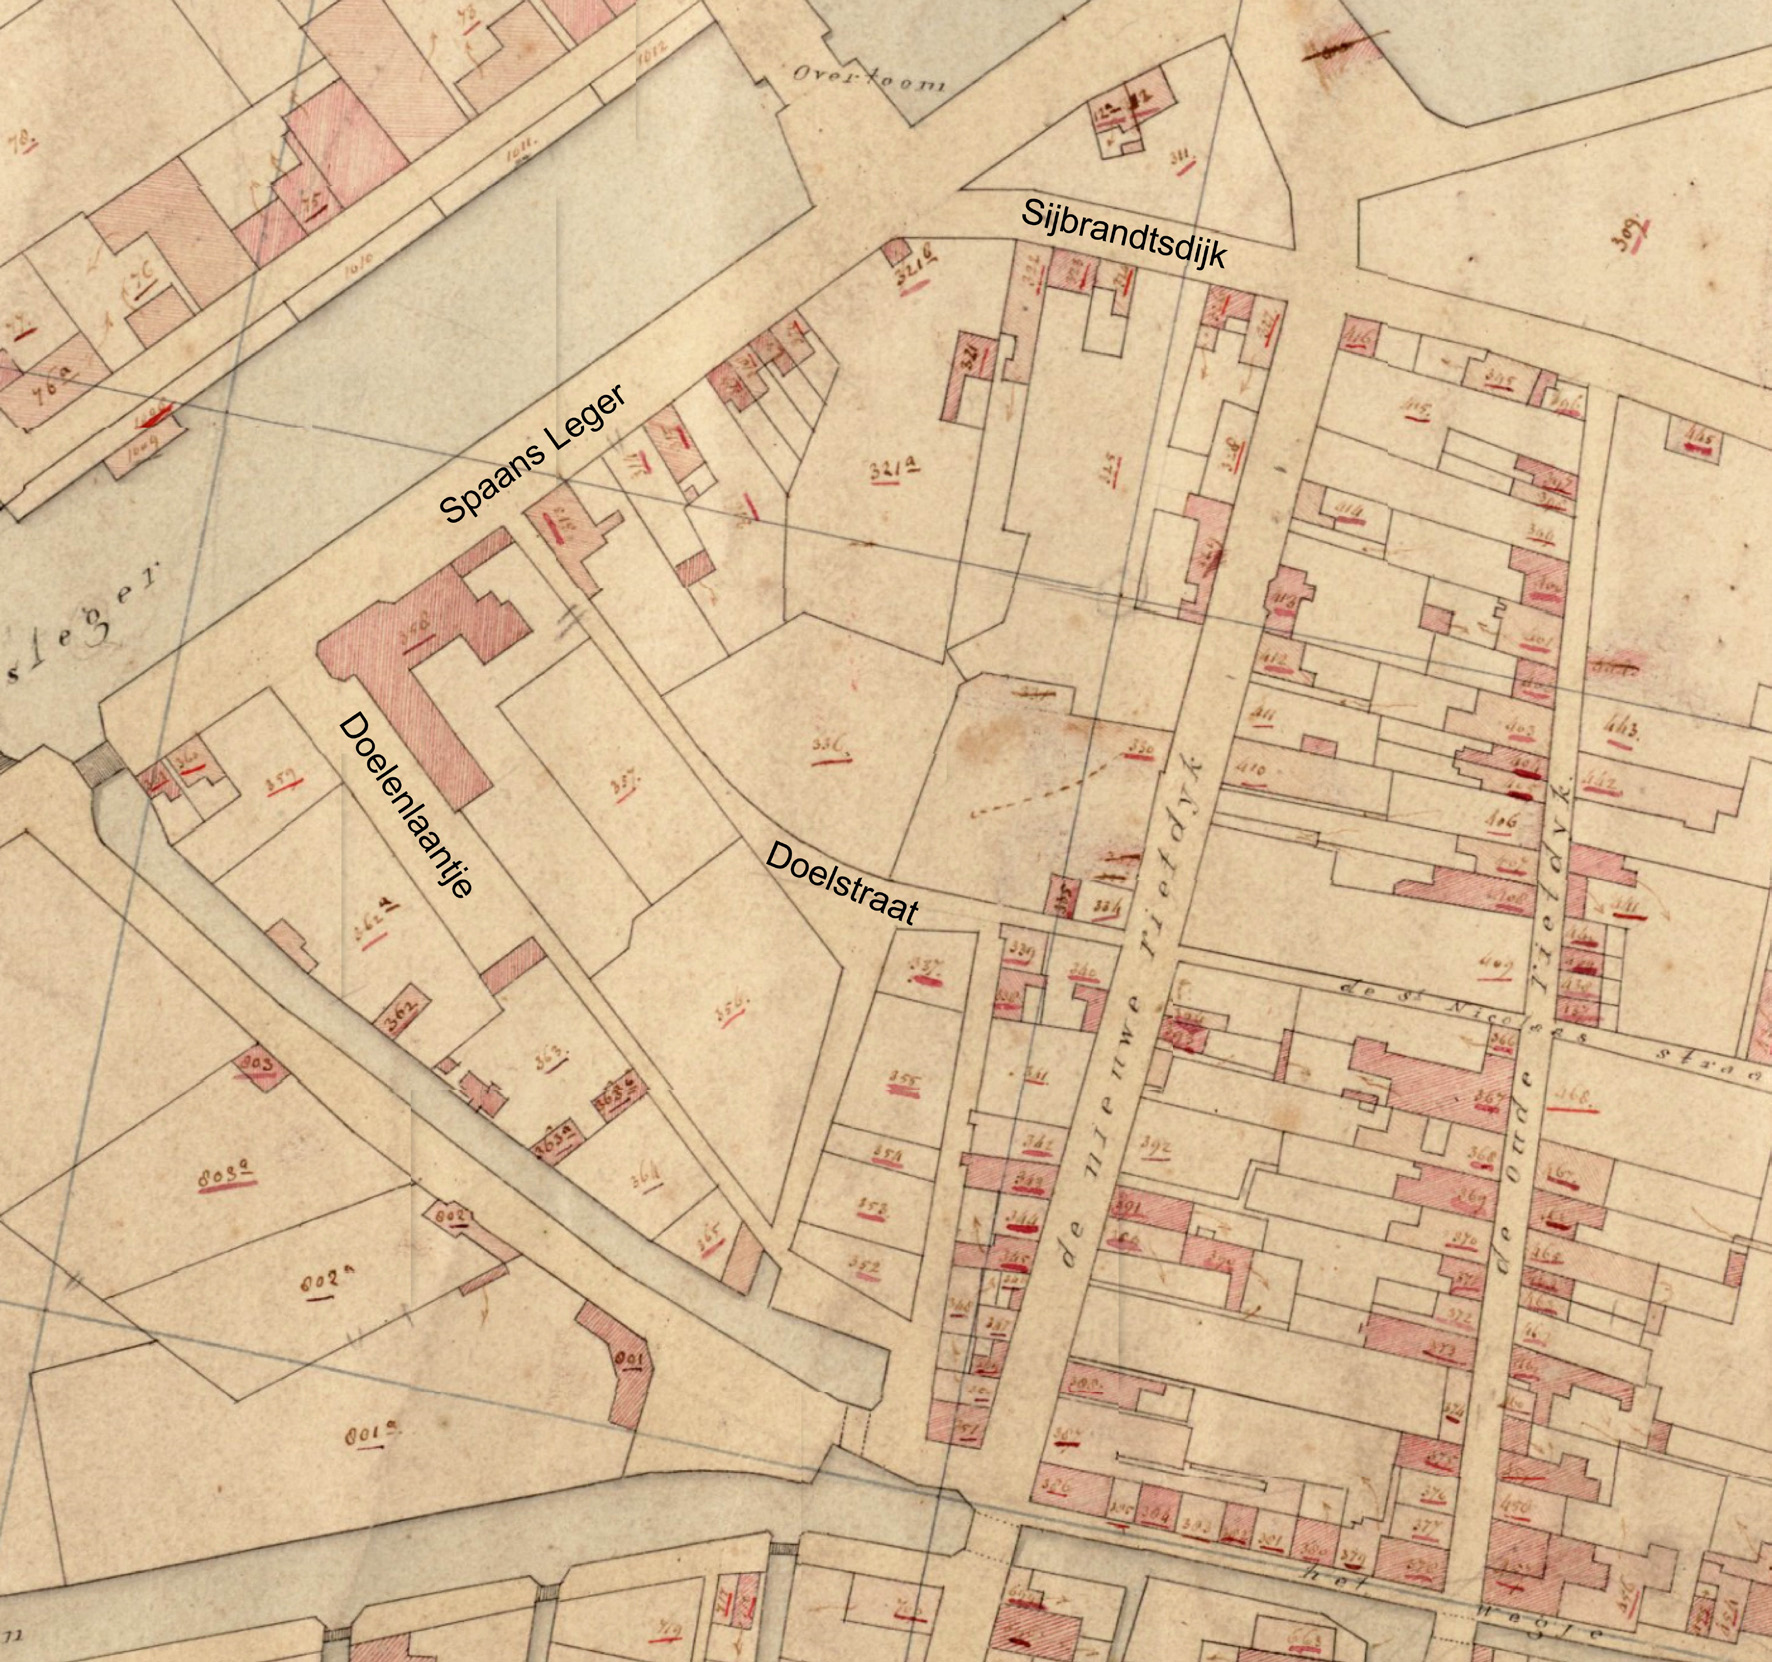 Het voormalige terrein van de Nieuwe Doelen is waarschijnlijk nog te herkennen in de perceelgrenzen op de kaart uit 1823.